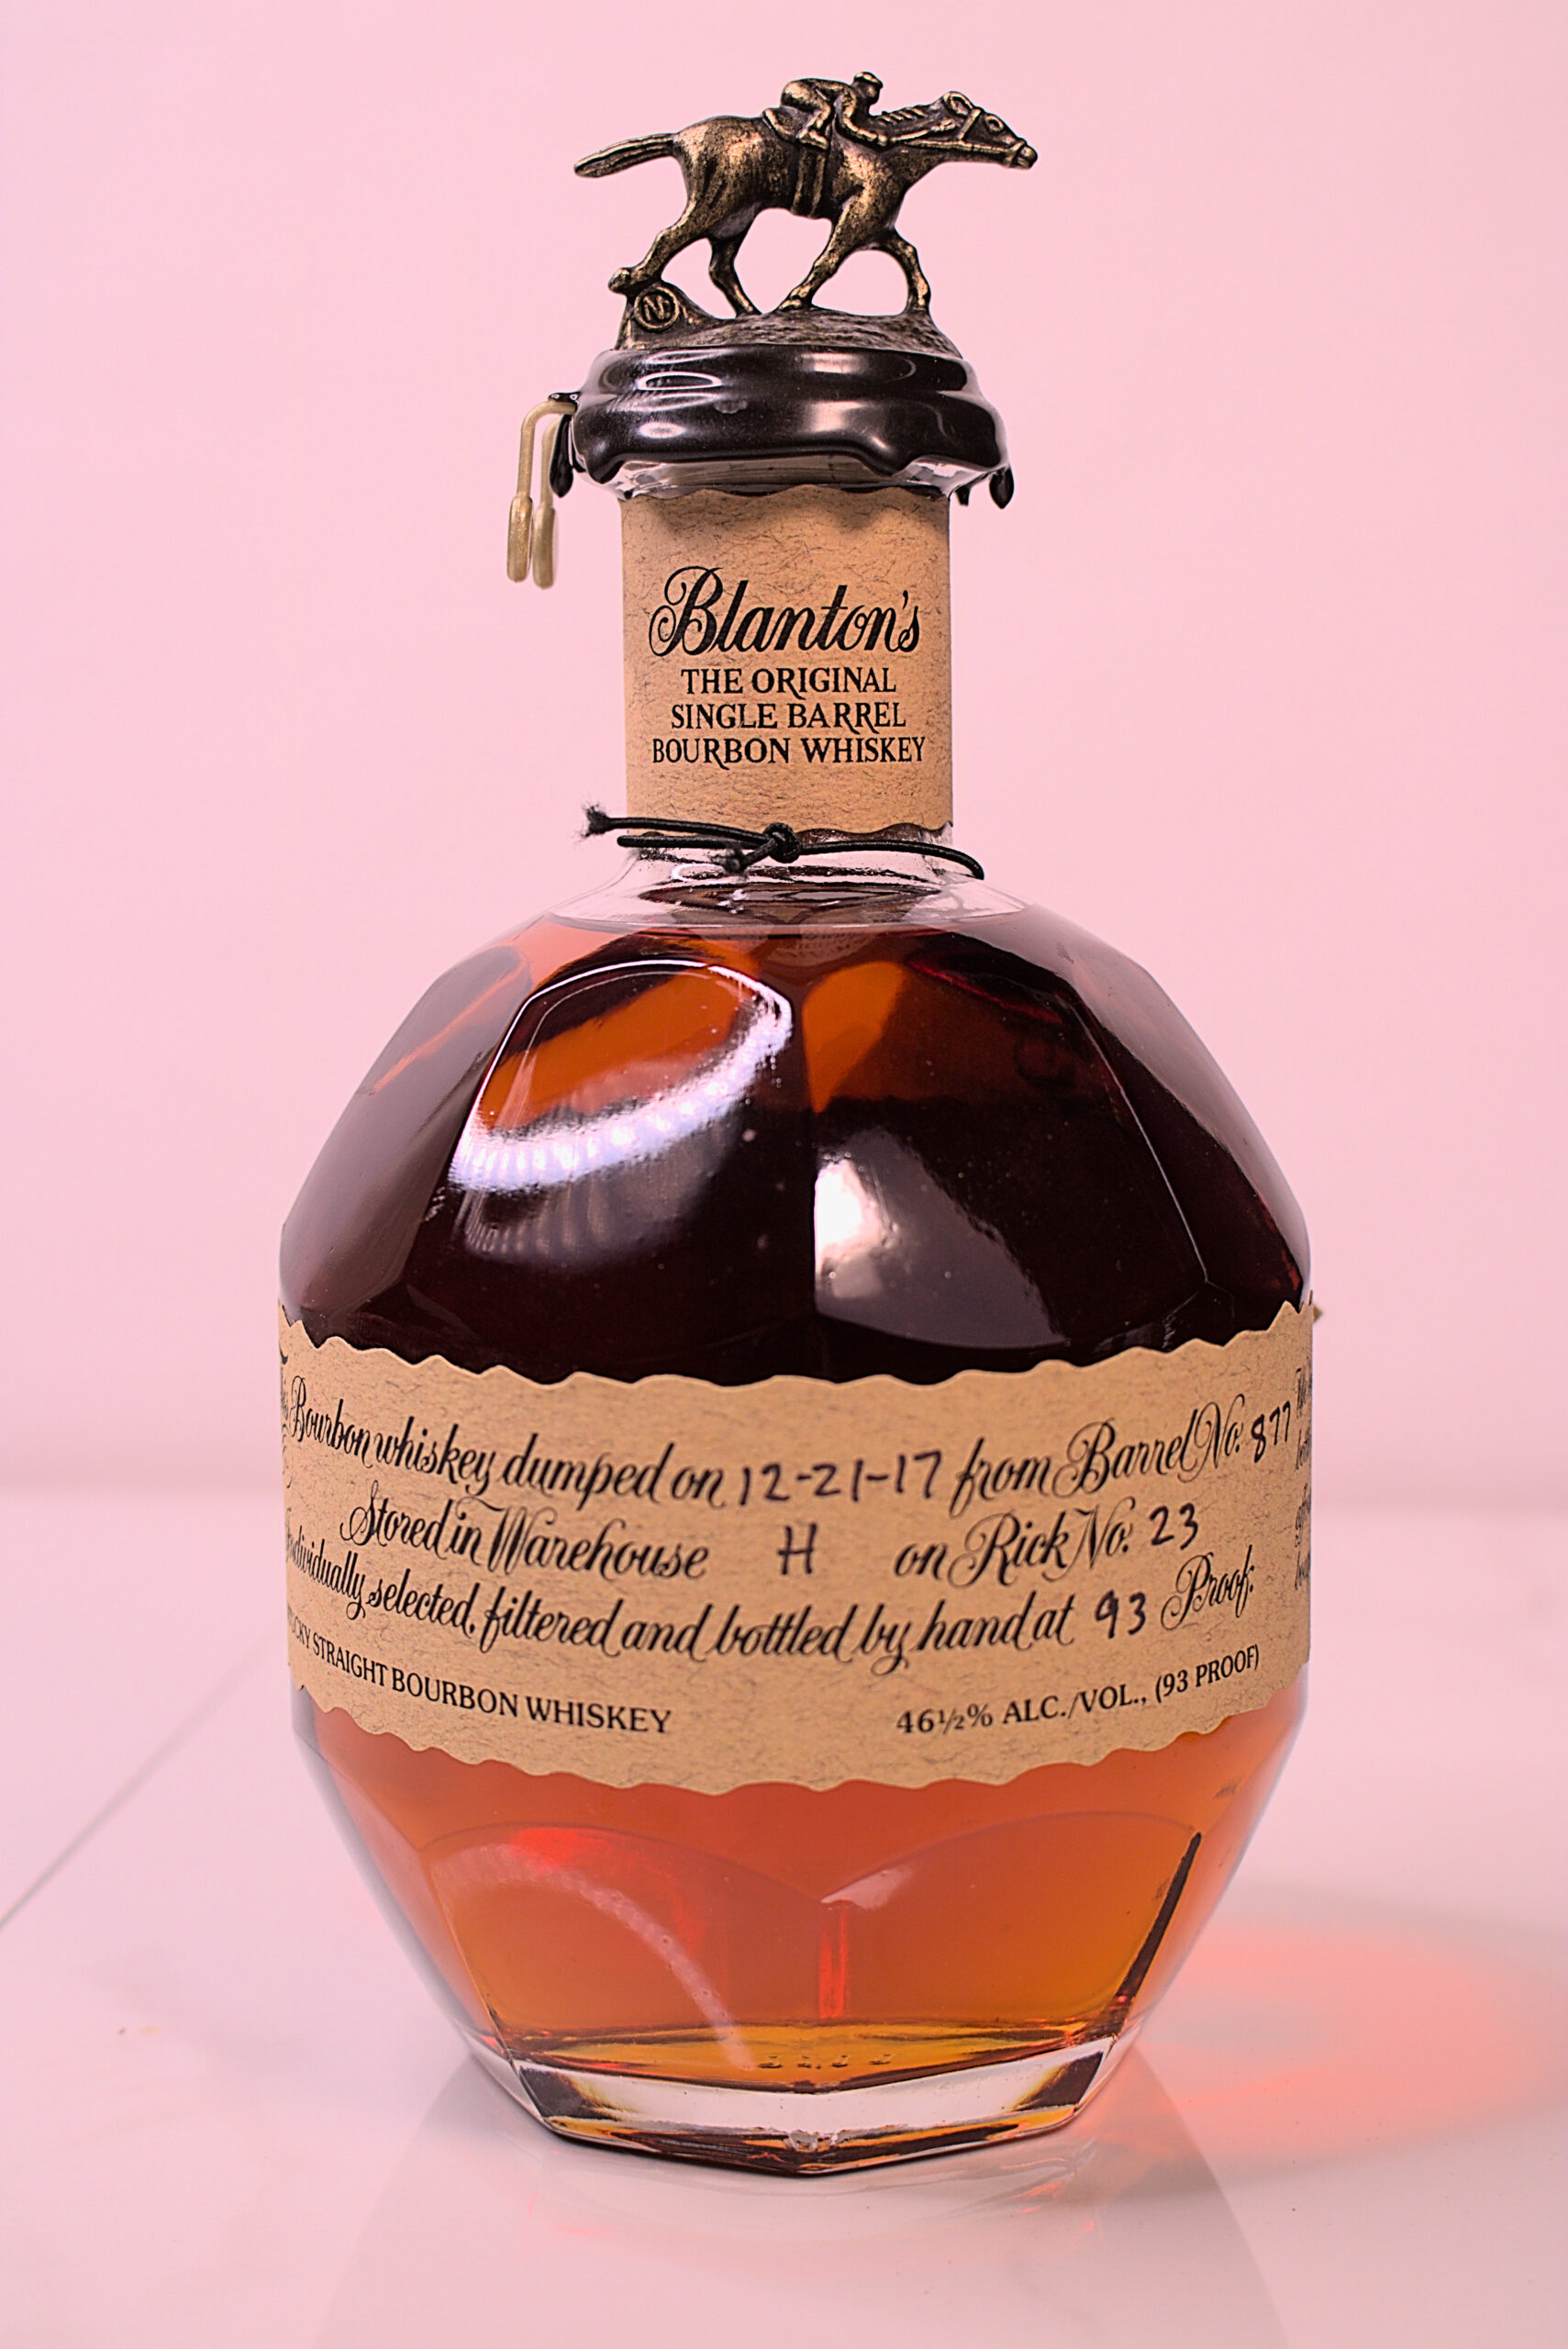 Blanton’s Original Single Barrel Bourbon